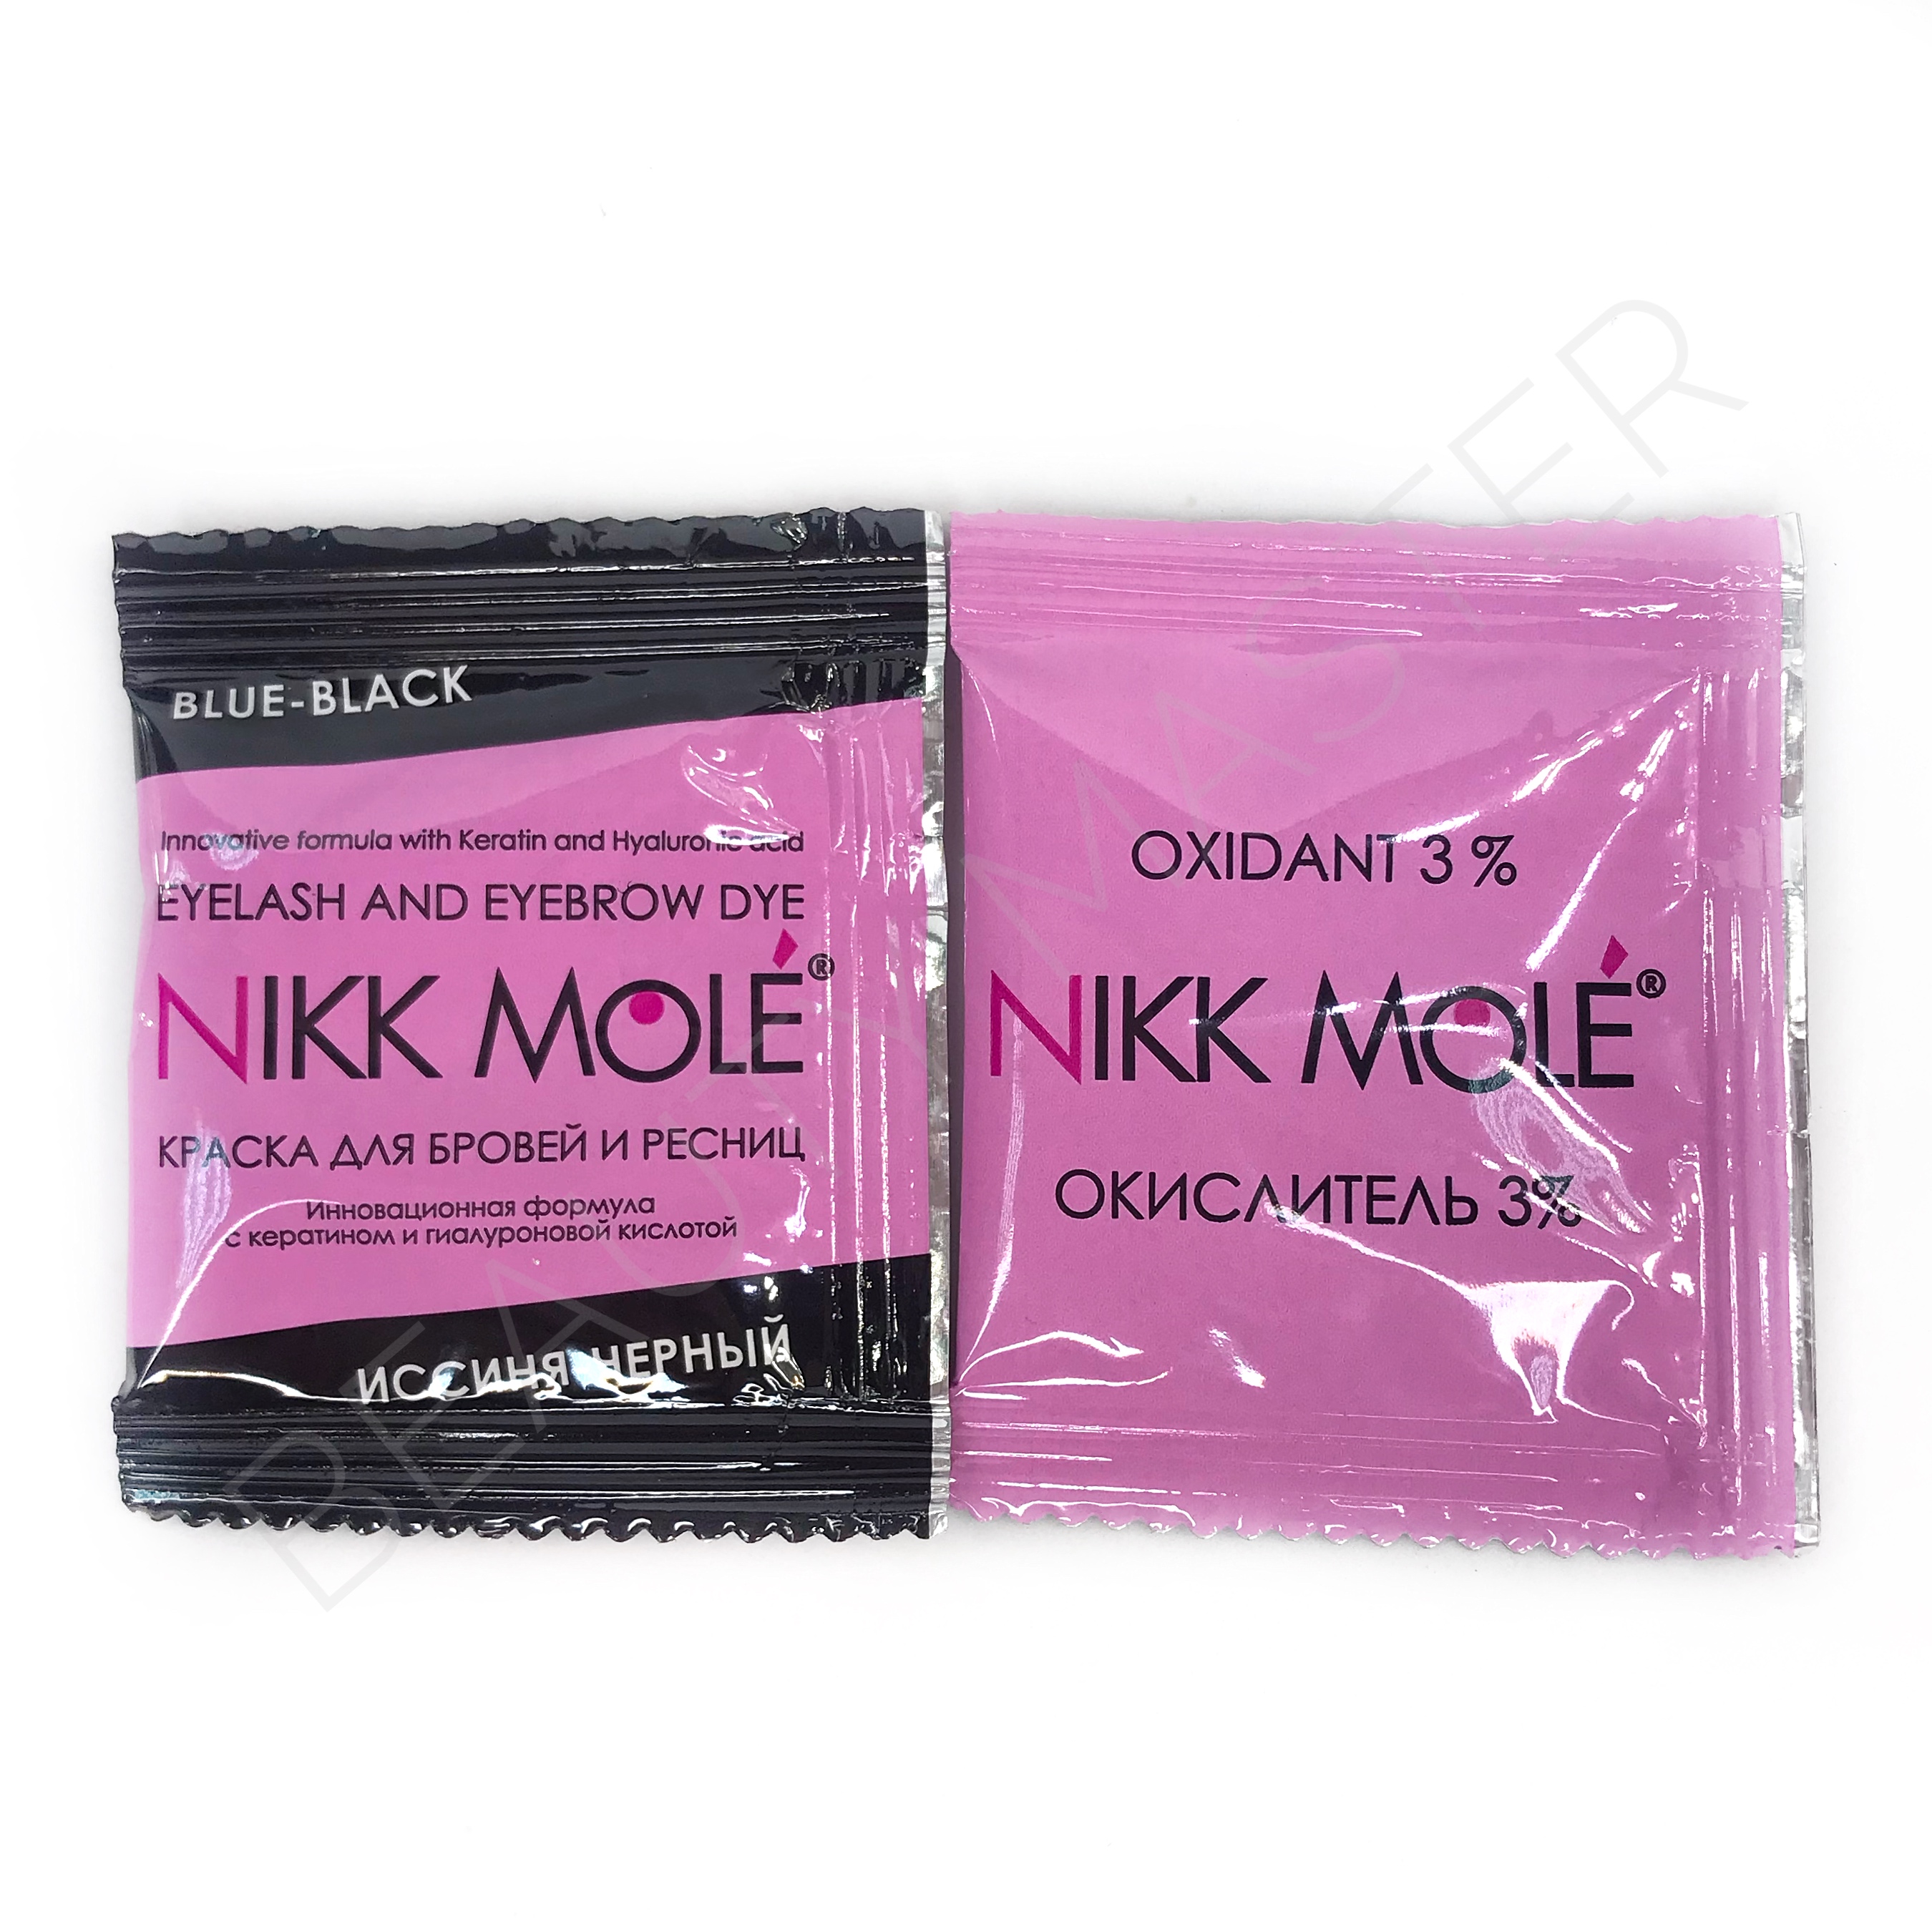 Nikk Mole саше краска+окислитель иссиня-черный для для бровей и ресниц